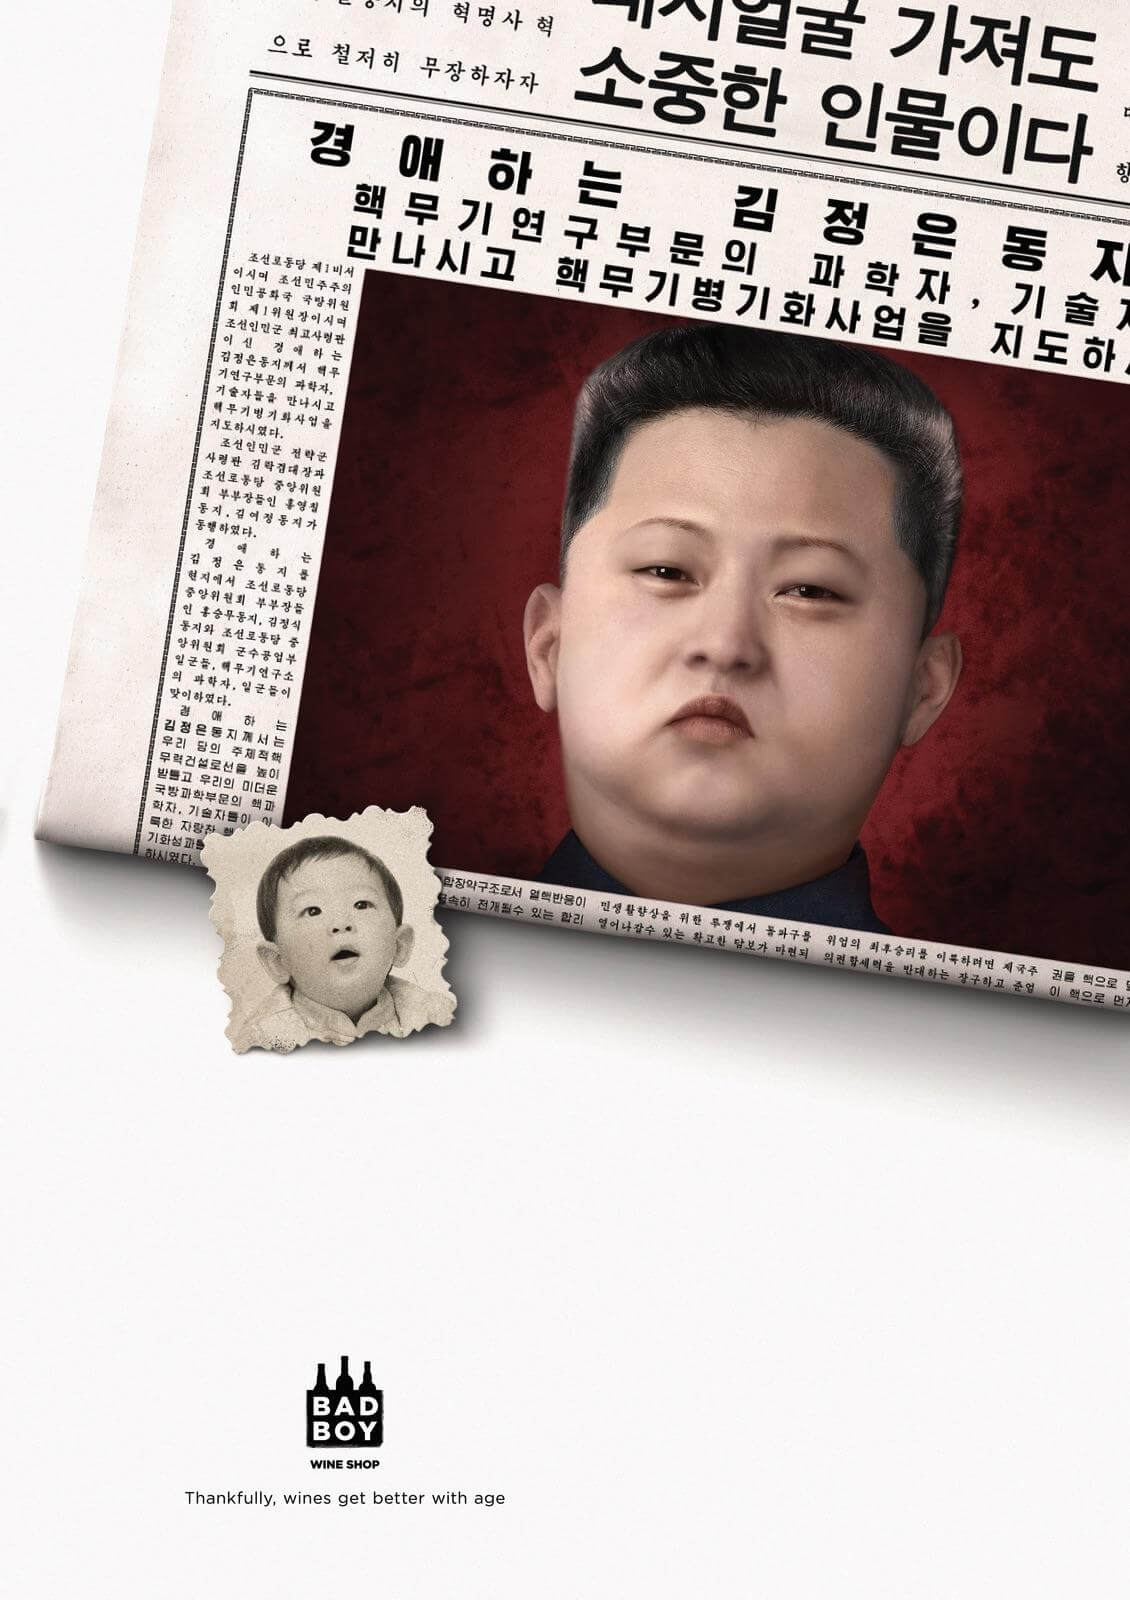 Bad Boy Kim Jong-un